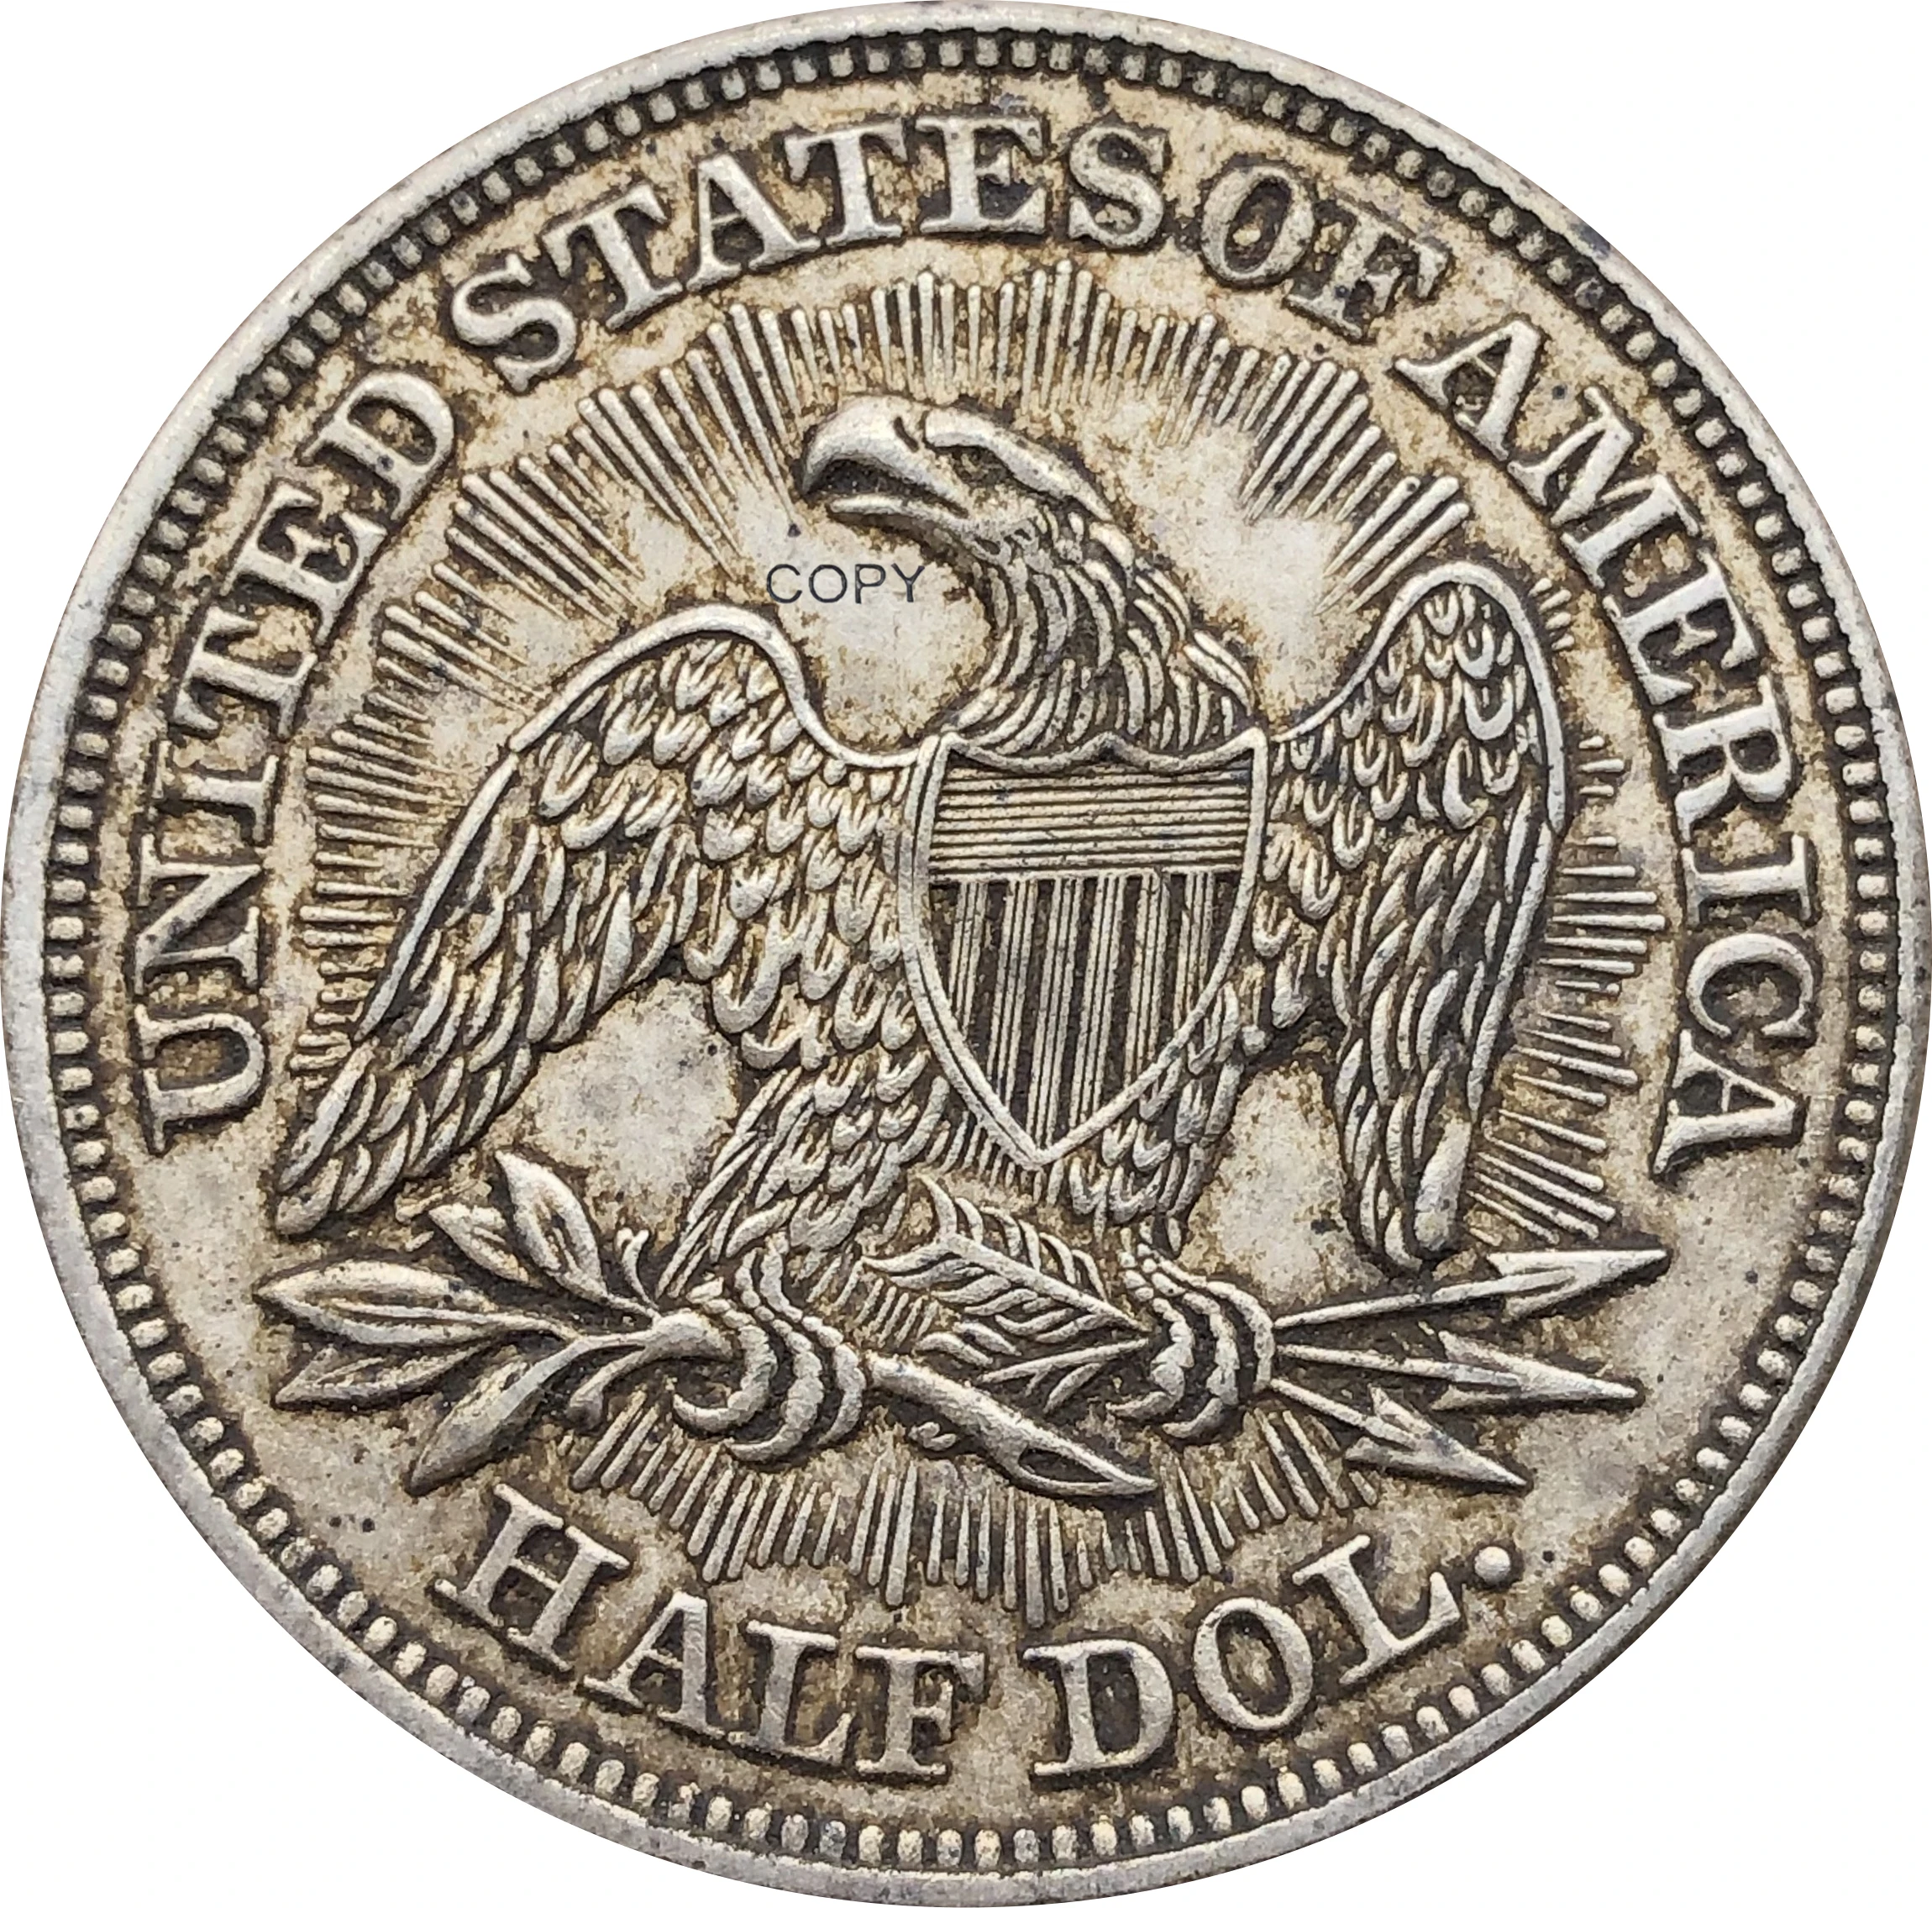 Amerika Birleşik Devletleri ABD 1853 ½ Dolar Oturmalı Özgürlük Yarım Dolar Cupronickel Gümüş Kaplama Altında Kartal Kopya Para Hiçbir Sloganı Görüntü 1